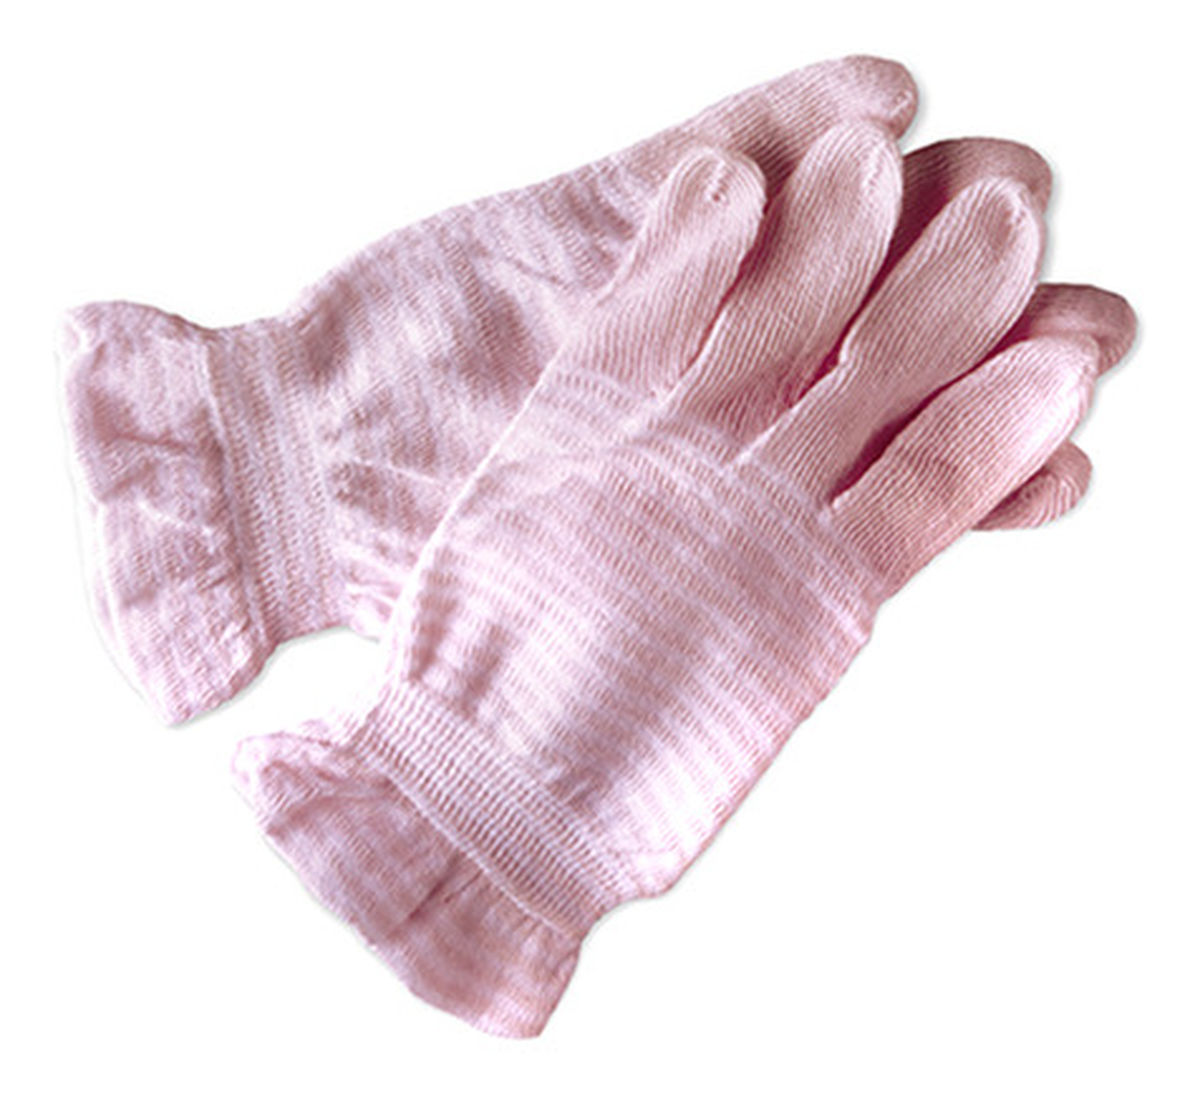 rękawiczki pielęgnacyjne